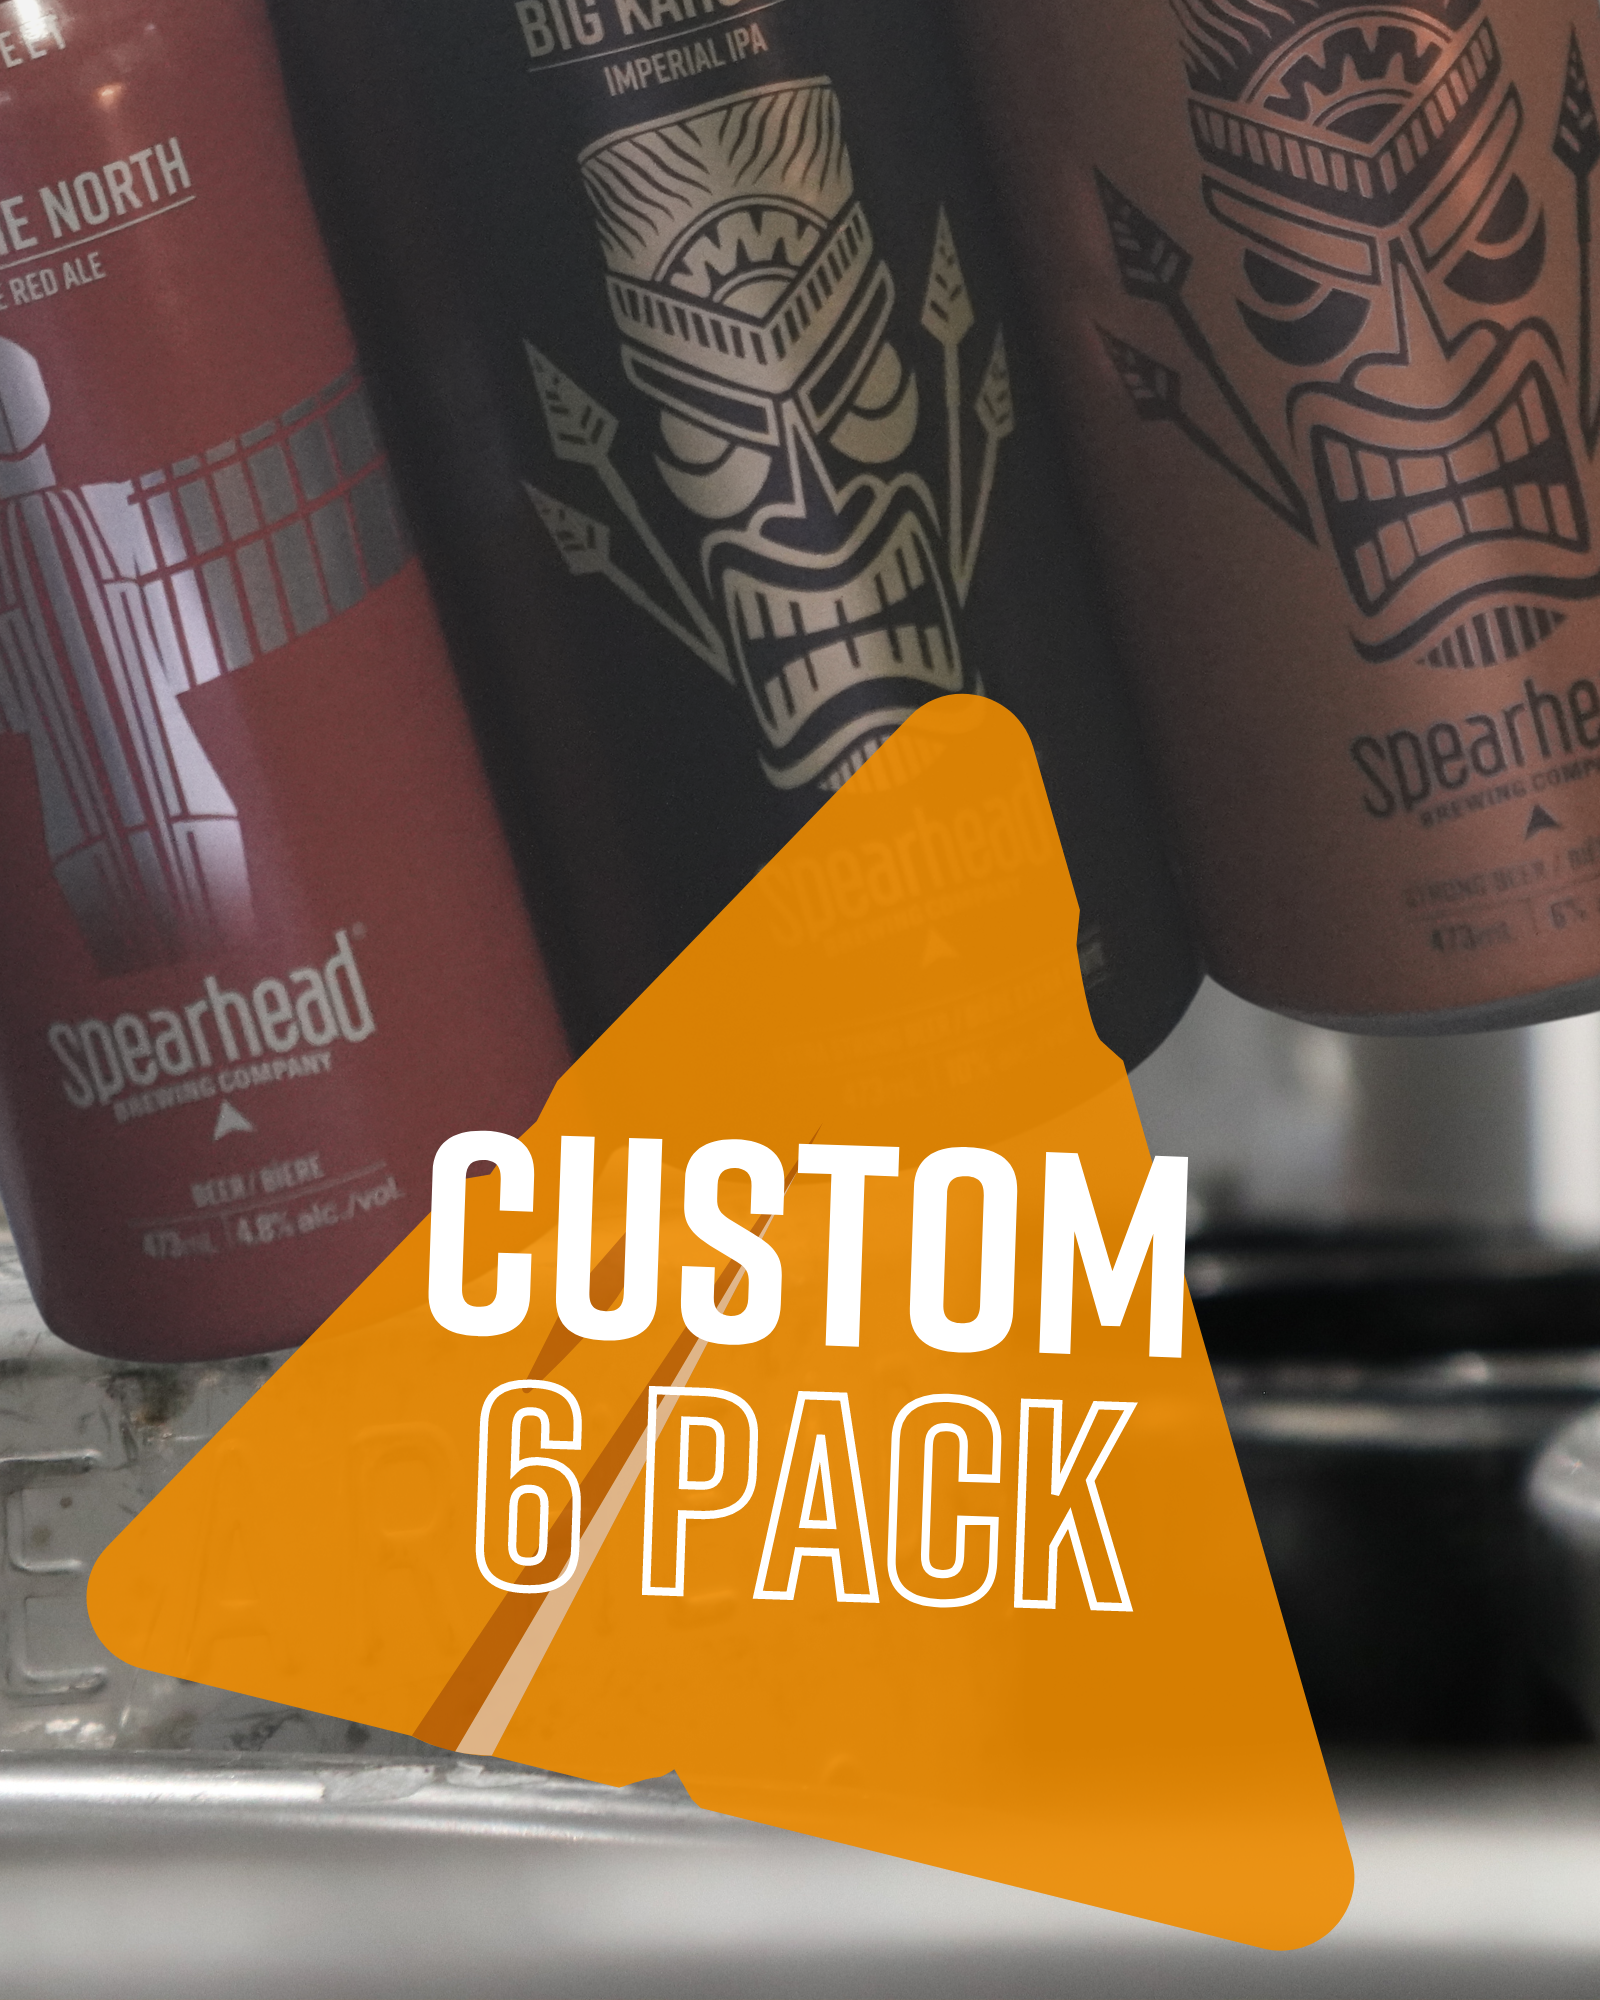 Custom 6 Pack